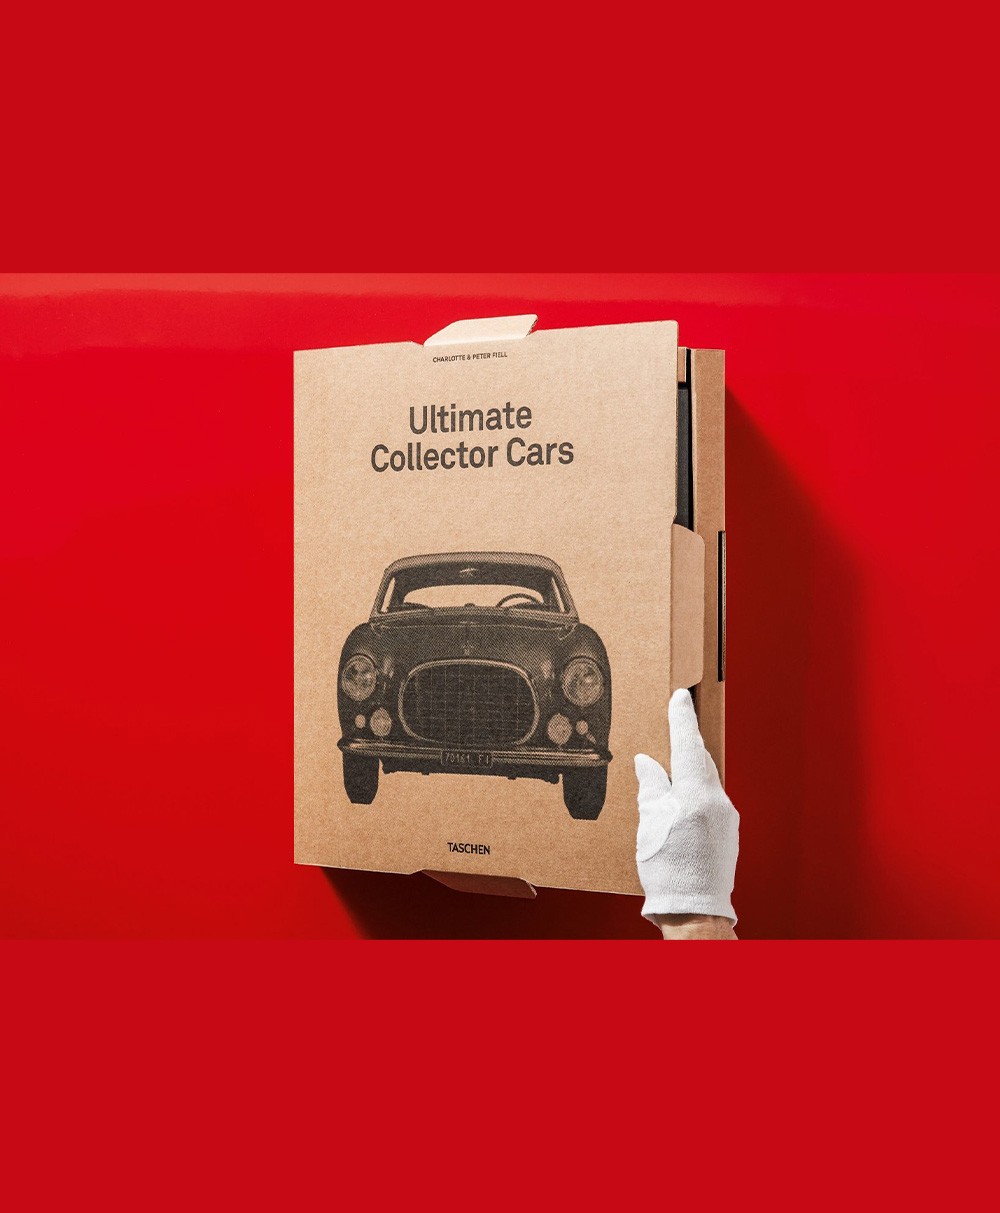 Produktbild des Bildbandes Ultimate Collector Cars vom Taschen Verlag - RAUM concept store